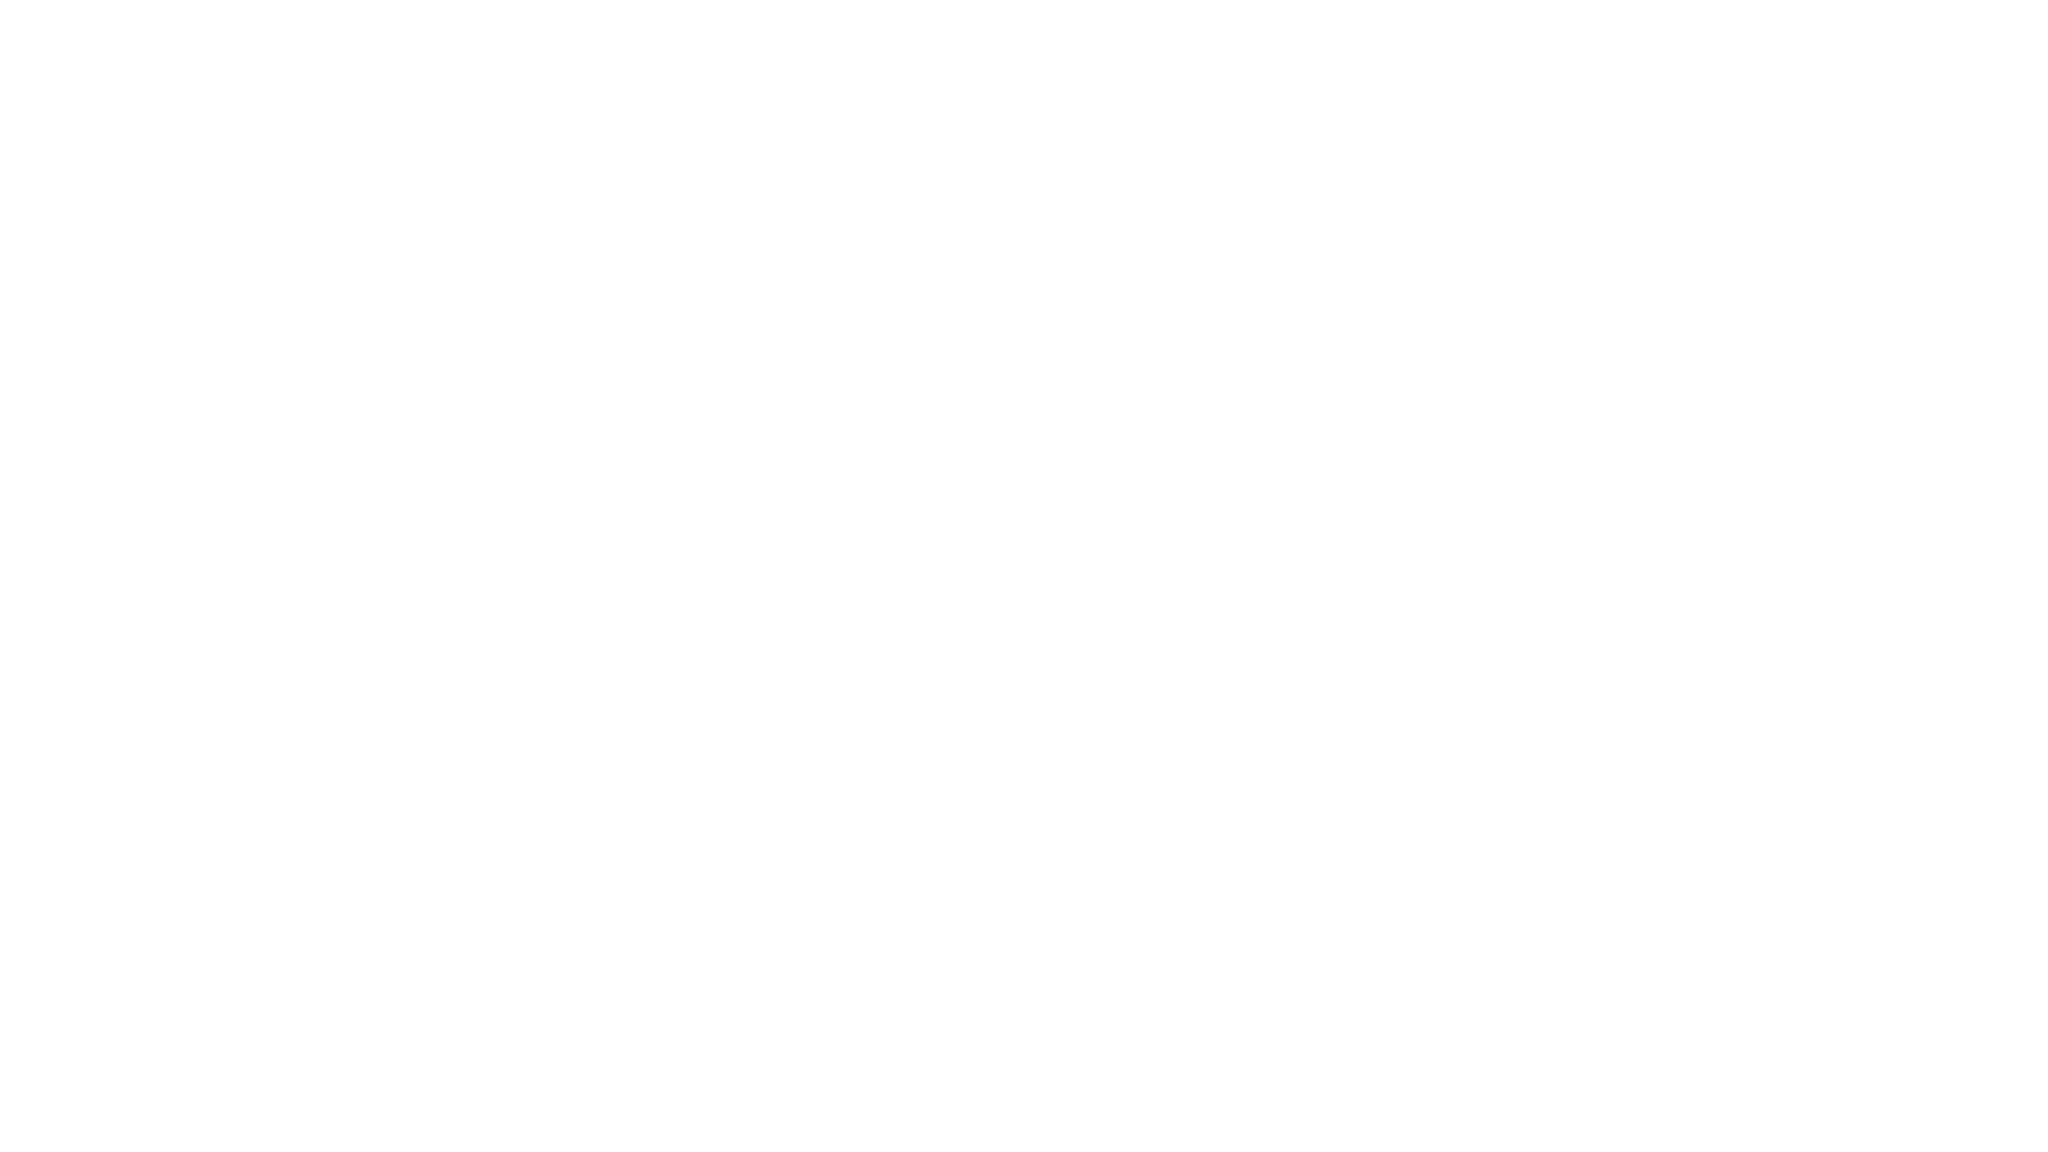 Zach Munowitz